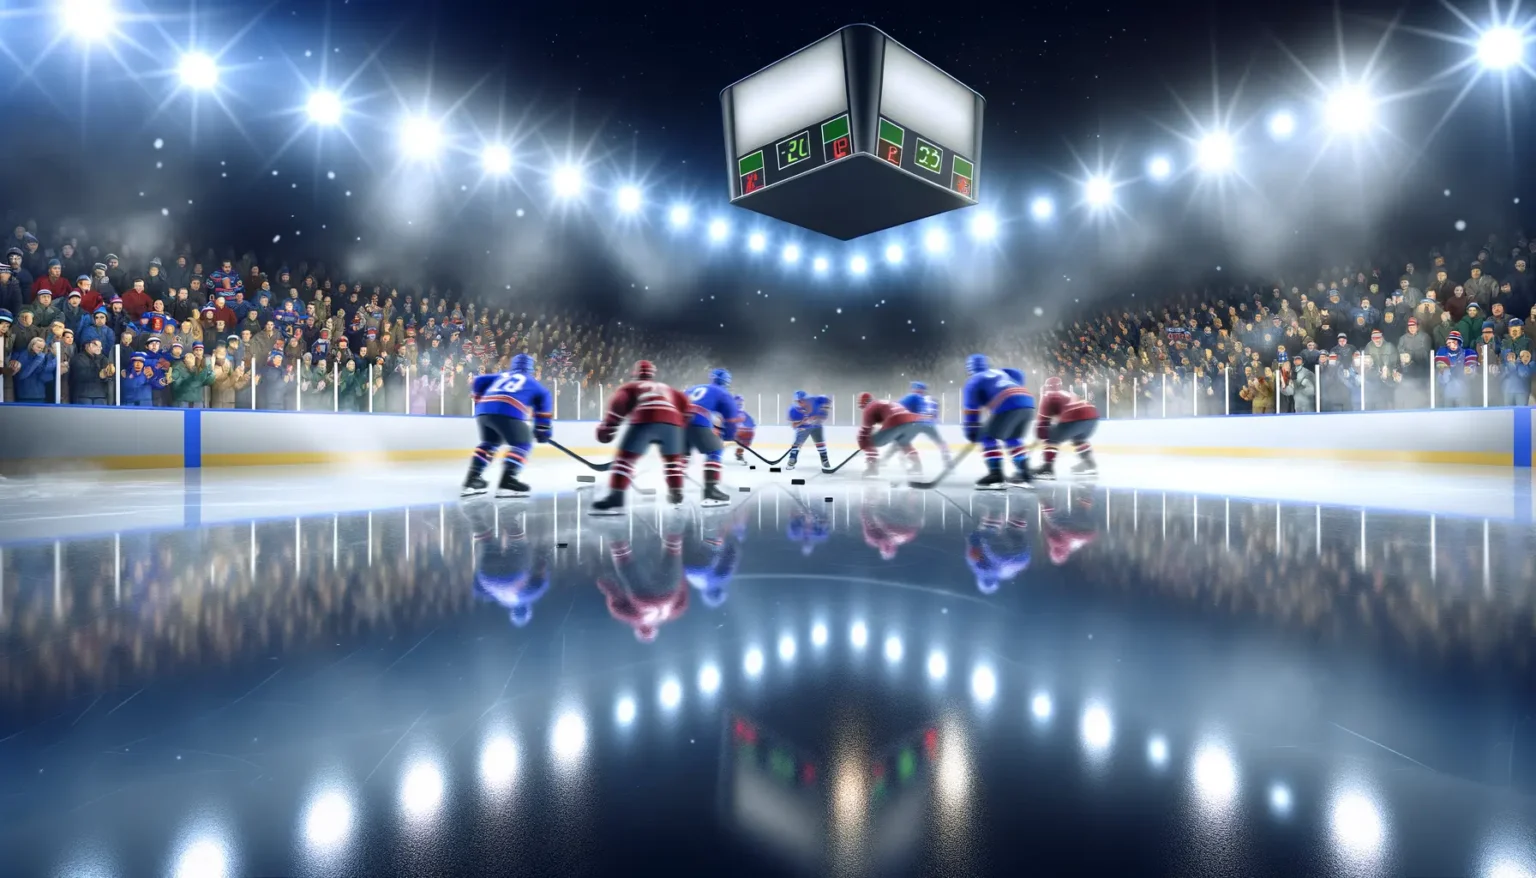 Eine emotionale Szene eines Eishockeyspiels bei Nacht in einer beleuchteten Arena mit zwei Mannschaften in blauen und roten Trikots, die sich auf das Spiel vorbereiten. Die Spieler sind auf dem Eis verteilt, mit zwei Spielern, die sich auf einen Anstoß konzentrieren. Die spiegelglatte Eisfläche reflektiert die Spieler und die hellen Stadionlichter. Die Zuschauertribünen sind randvoll mit begeisterten Fans in warmer Winterkleidung. Über dem Eis hängt eine Anzeigetafel, die den Spielstand 2-2 zeigt, was auf eine hohe Spannung im Spiel hindeutet.